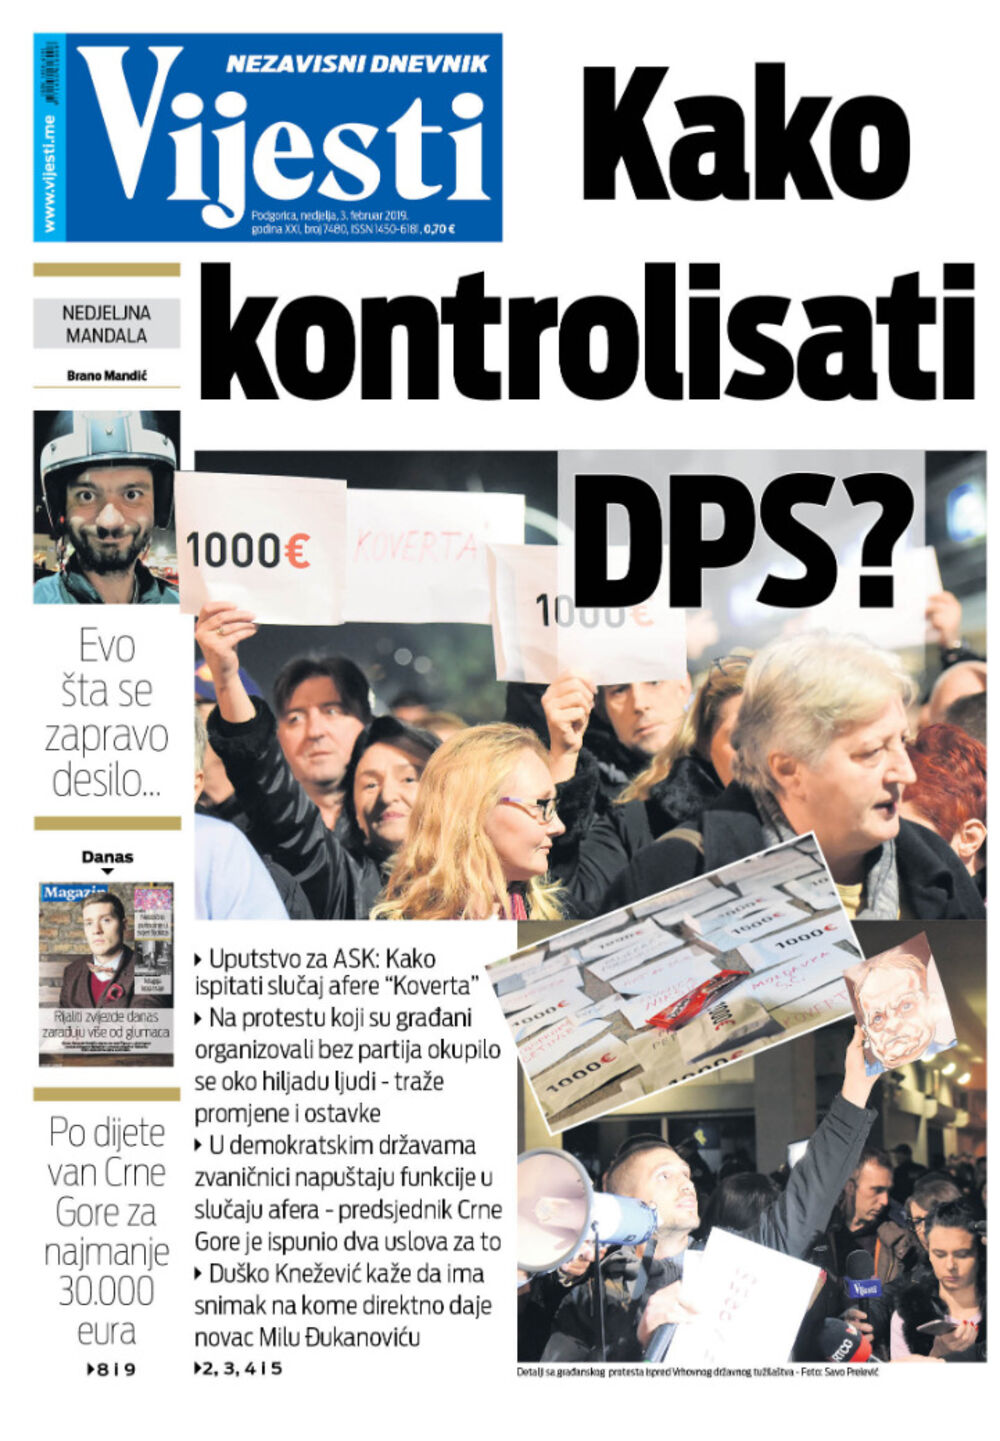 Naslovna strana "Vijesti" za 3. februar